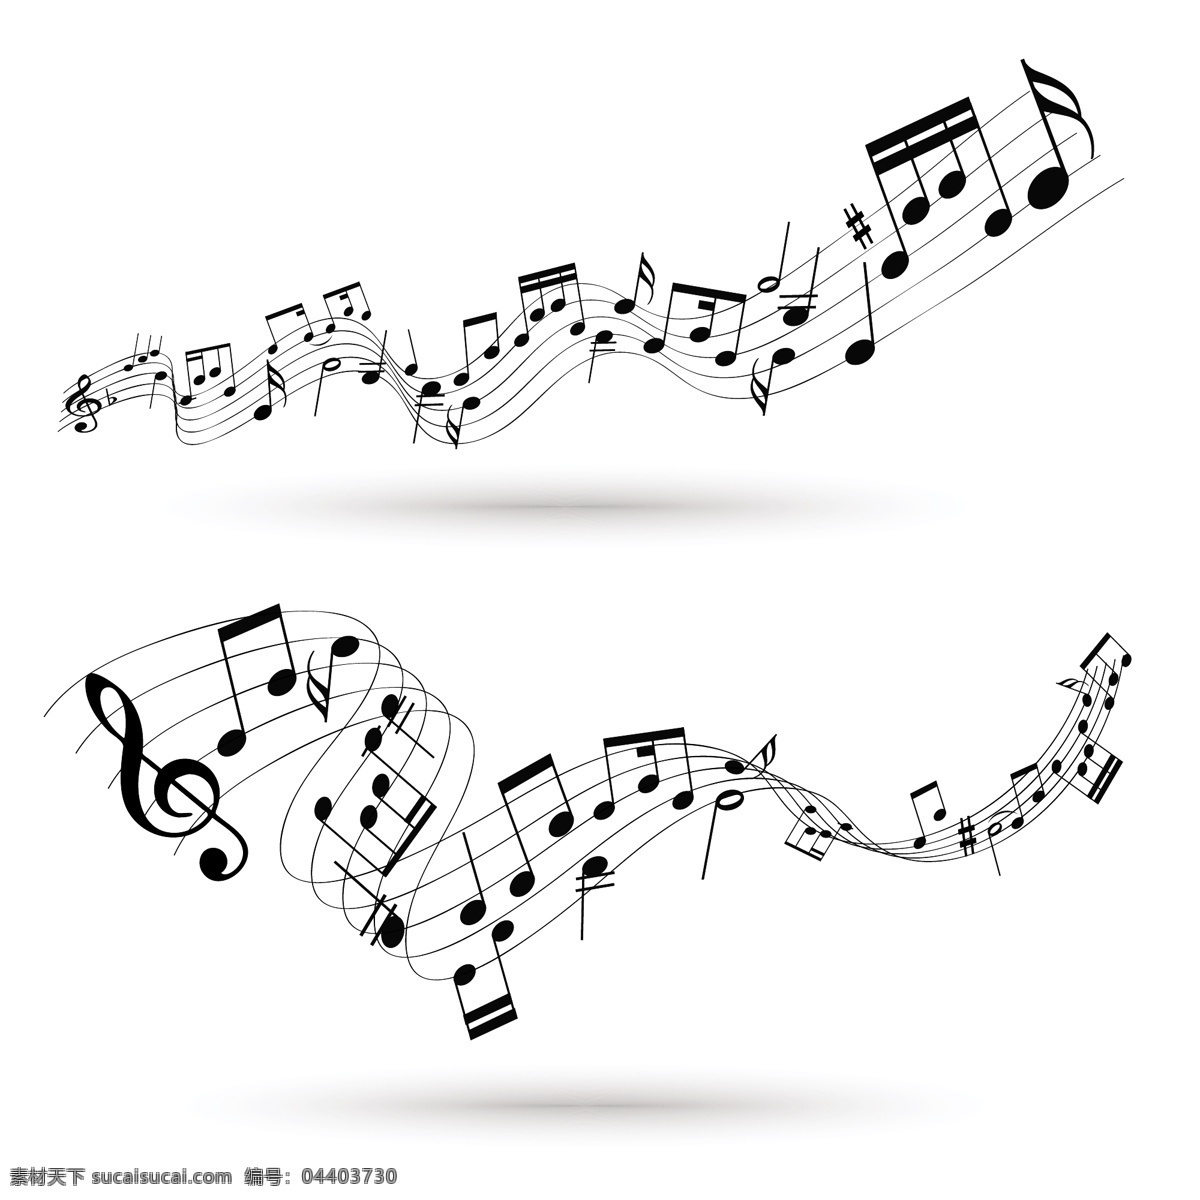 矢量音乐 音乐符号 字符 音乐字符 音标 音符 乐符 矢量音符 文化艺术 舞蹈音乐